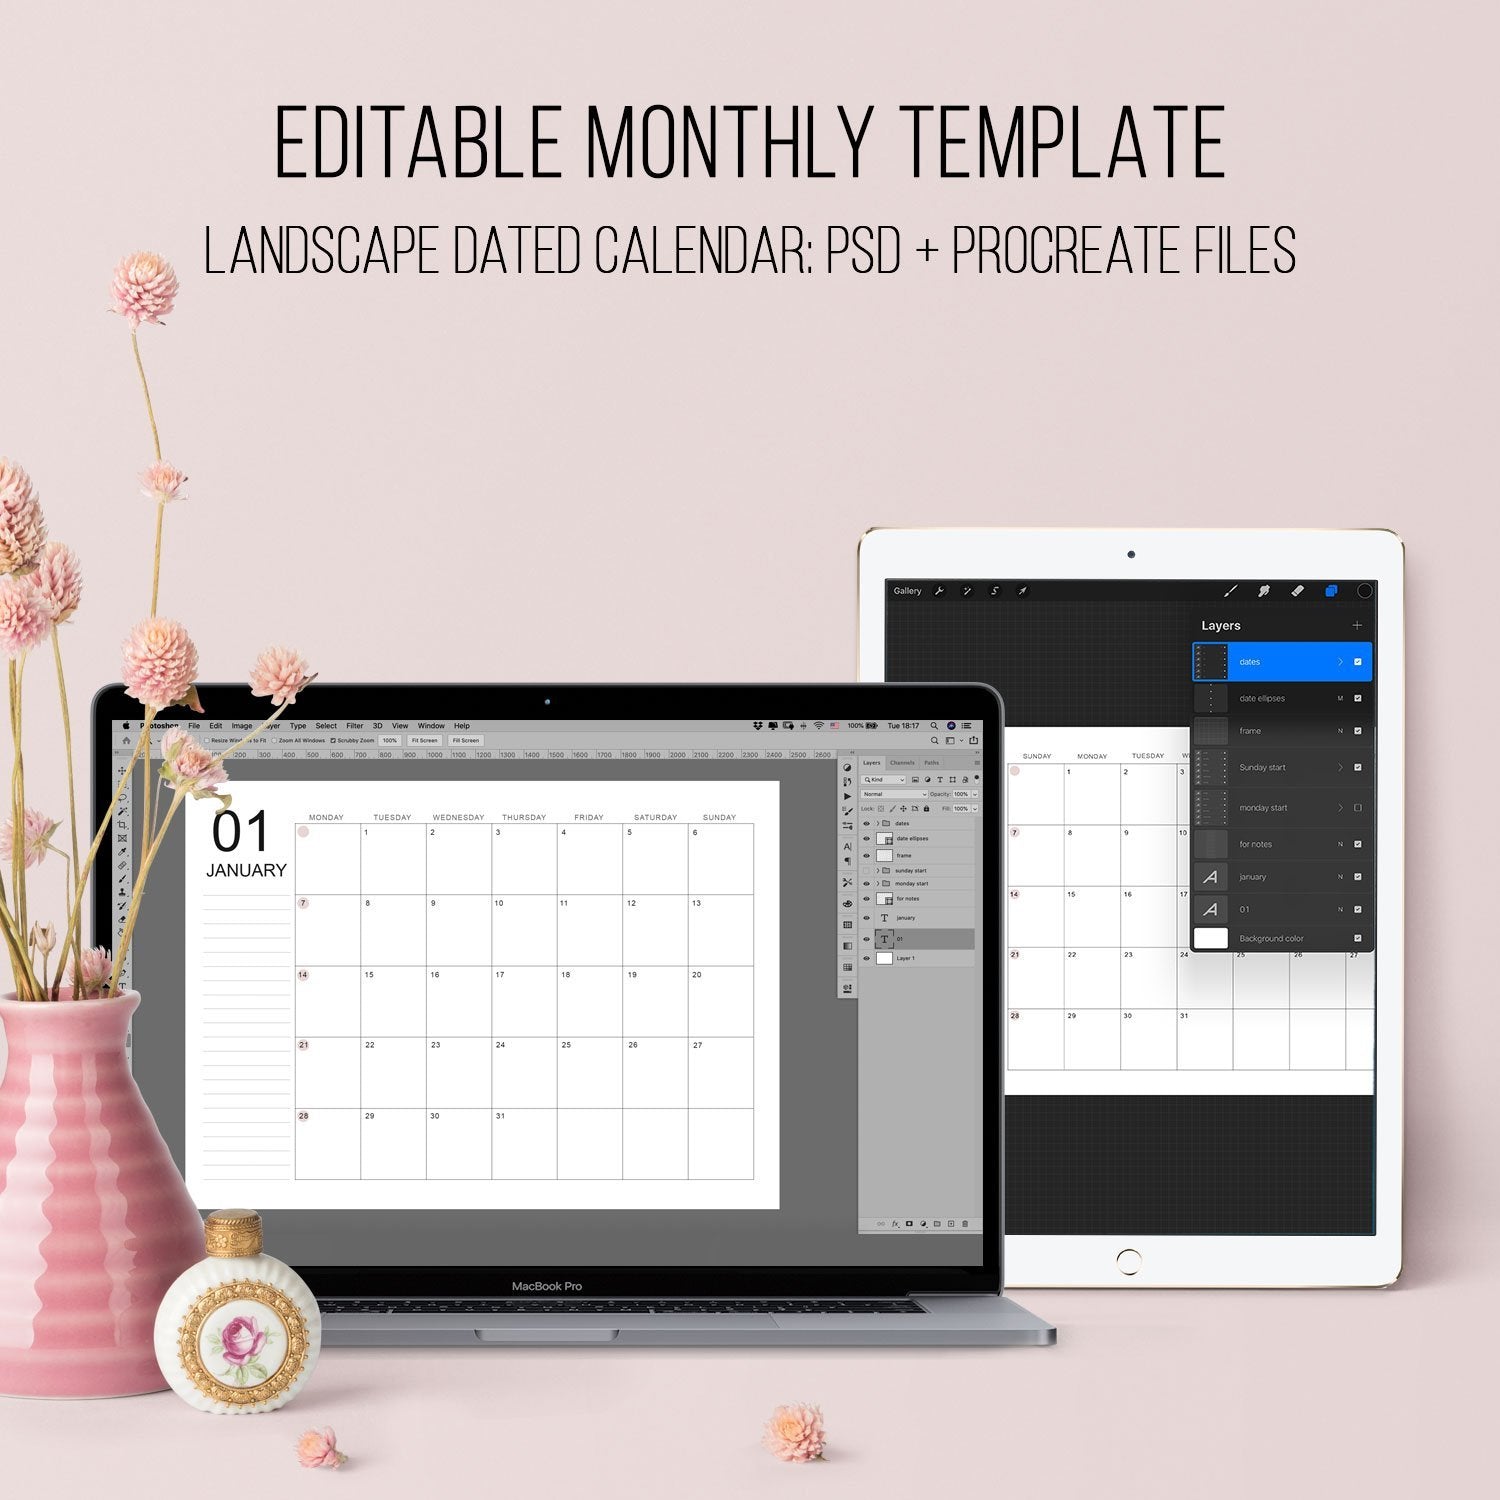 procreate calendar template free